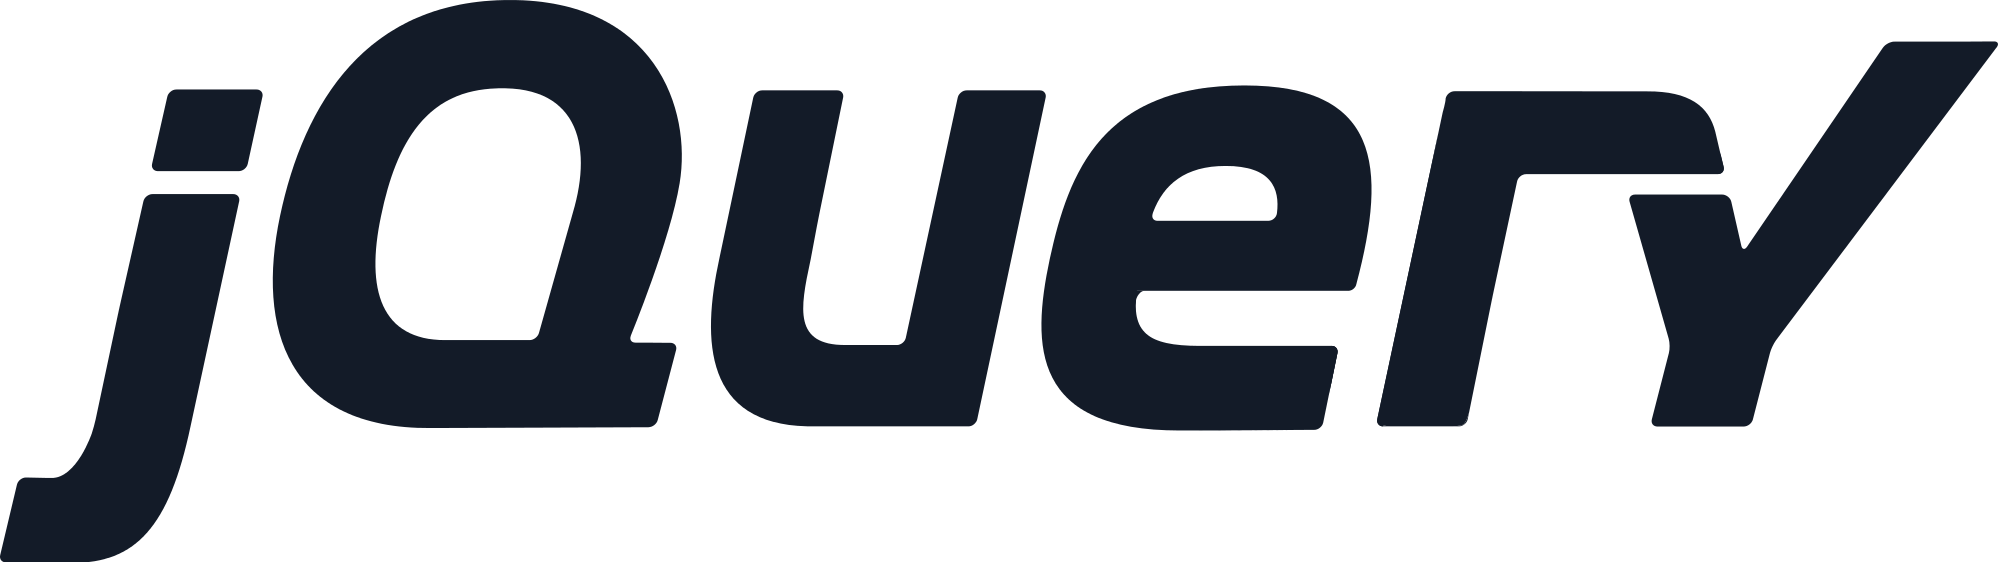 jQuery's logo.